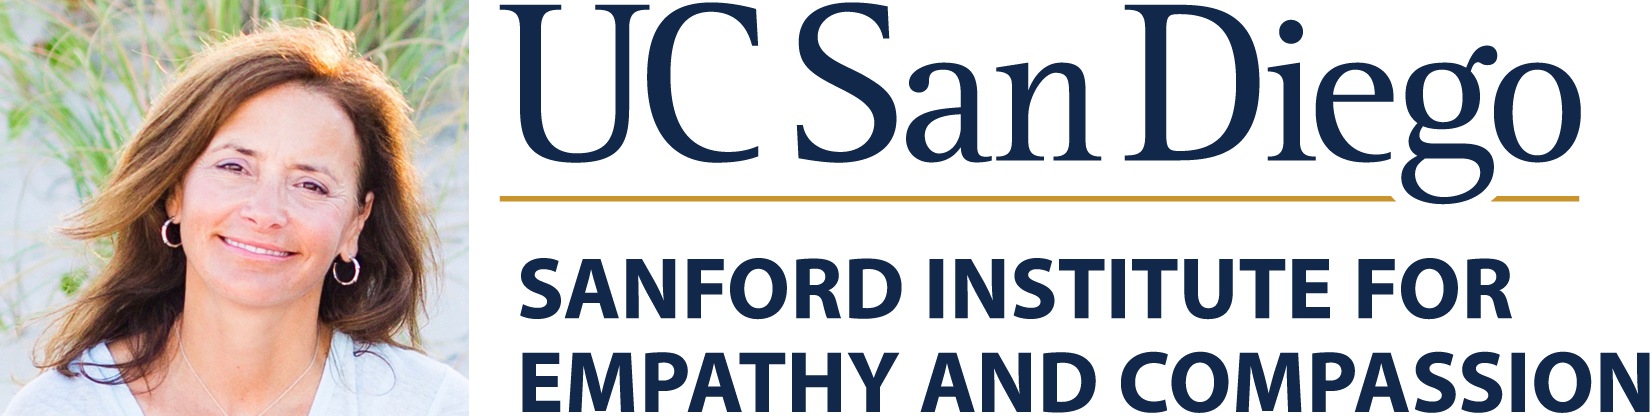 pelucio_sanford-institute-logo-copy.png